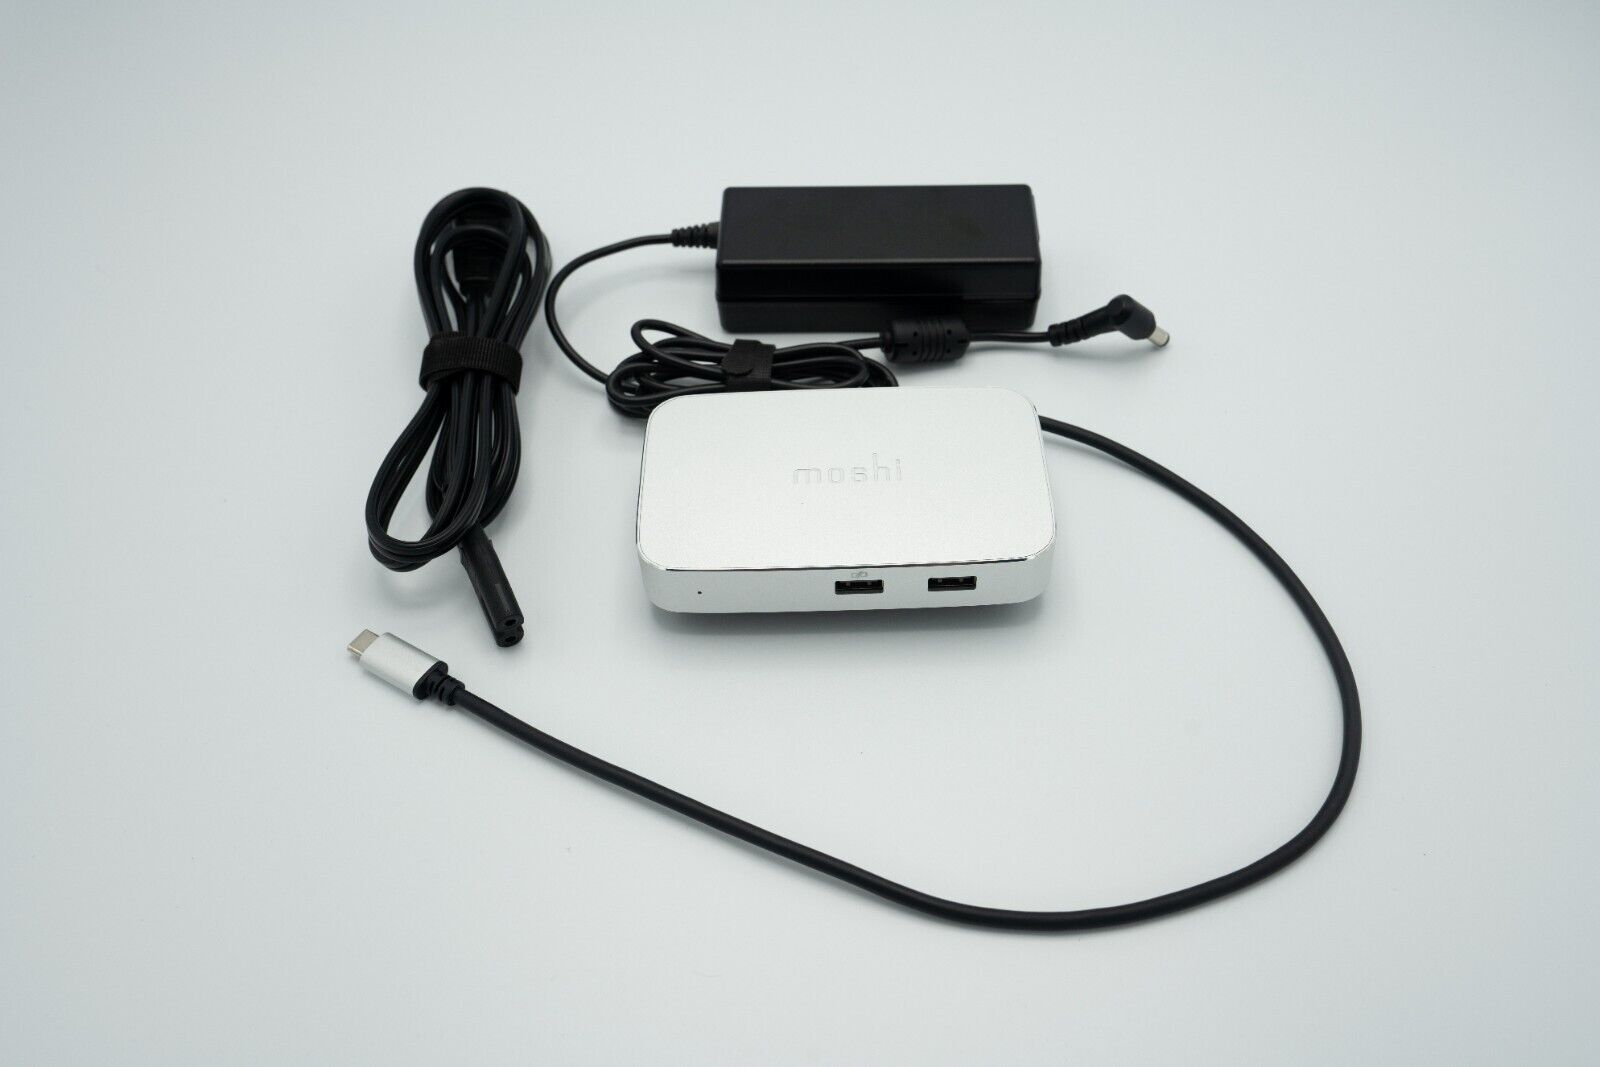 Moshi Symbus Compact Docking Station for USB-C/Thunderbolt 99MO084205 - Silver